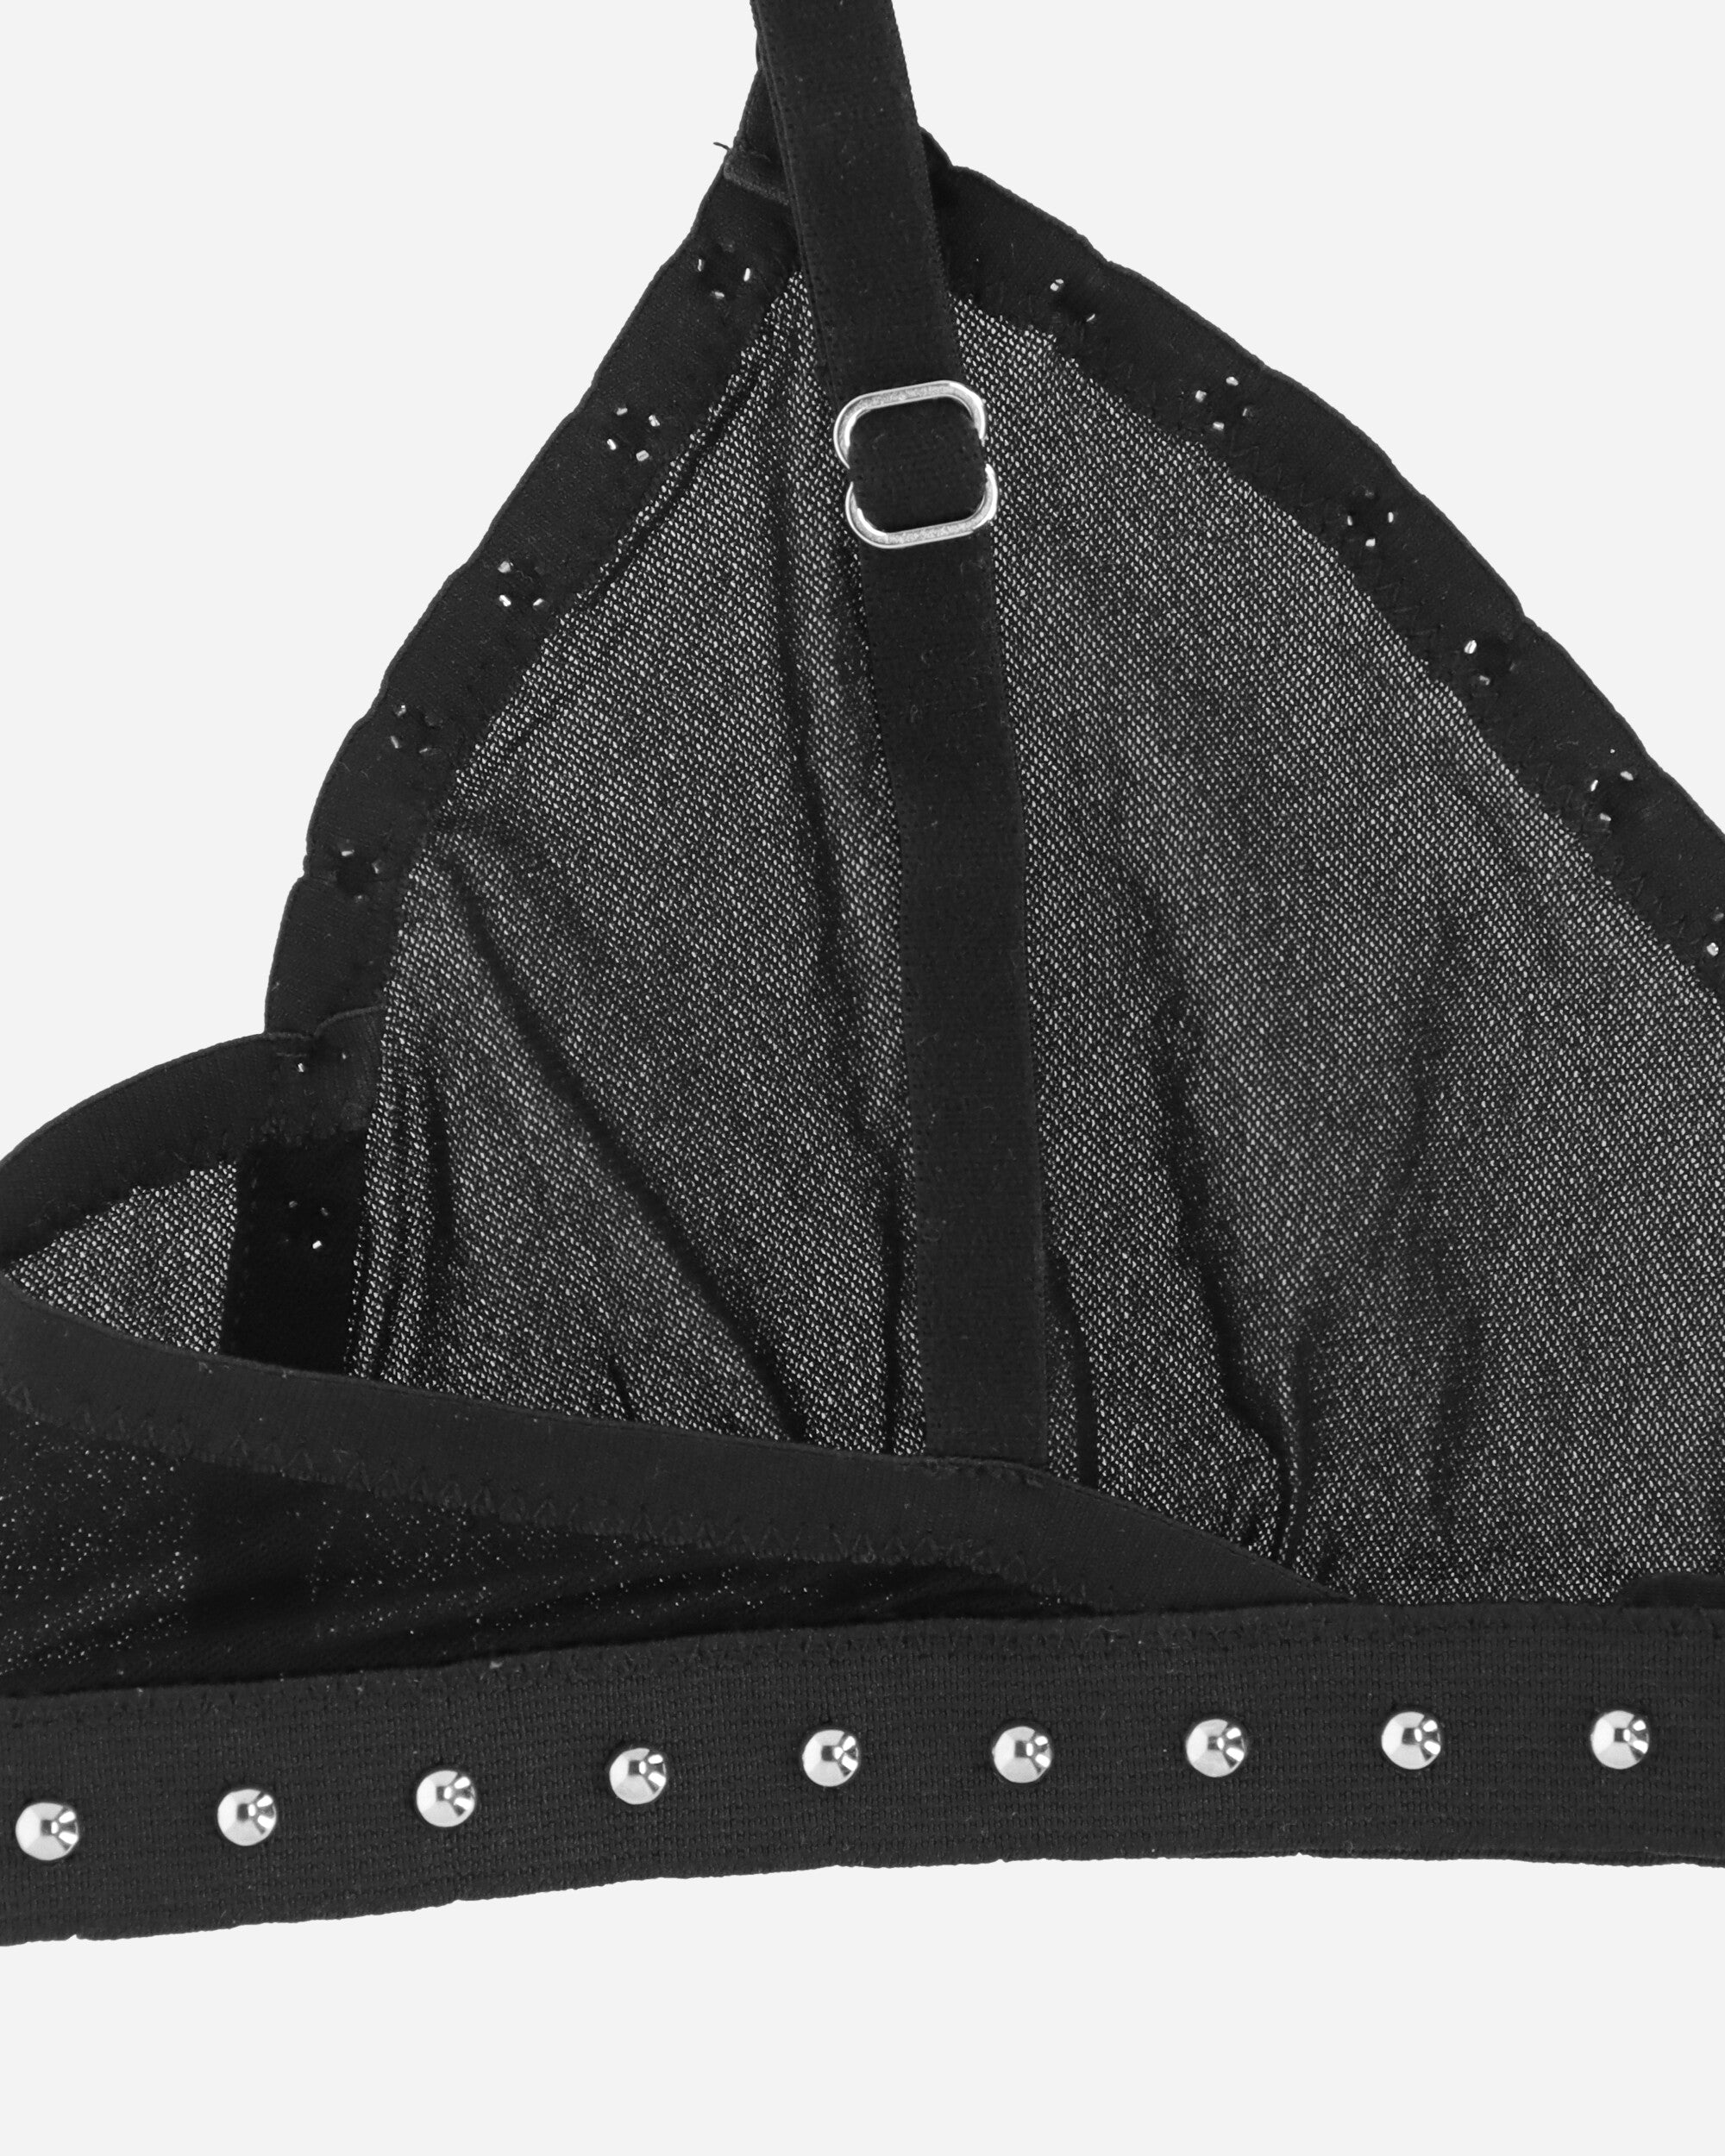 Priscavera Wmns Studded Bra Black Underwear Bras 008025-117 BK